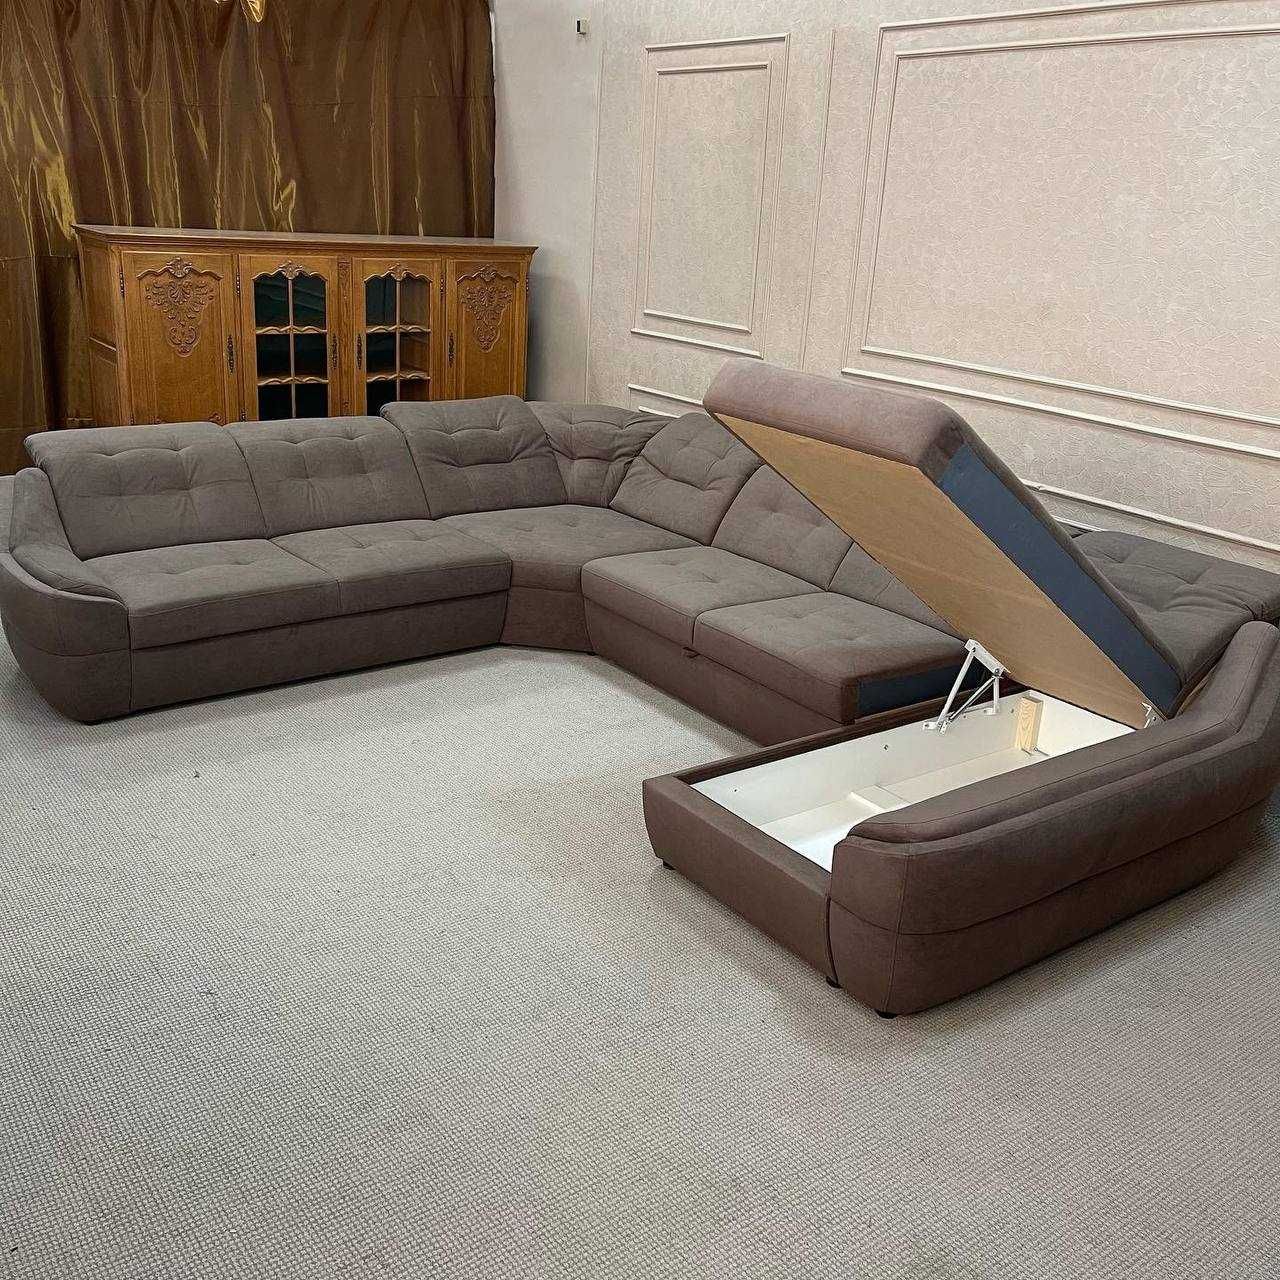 Новий великий розкладний диван